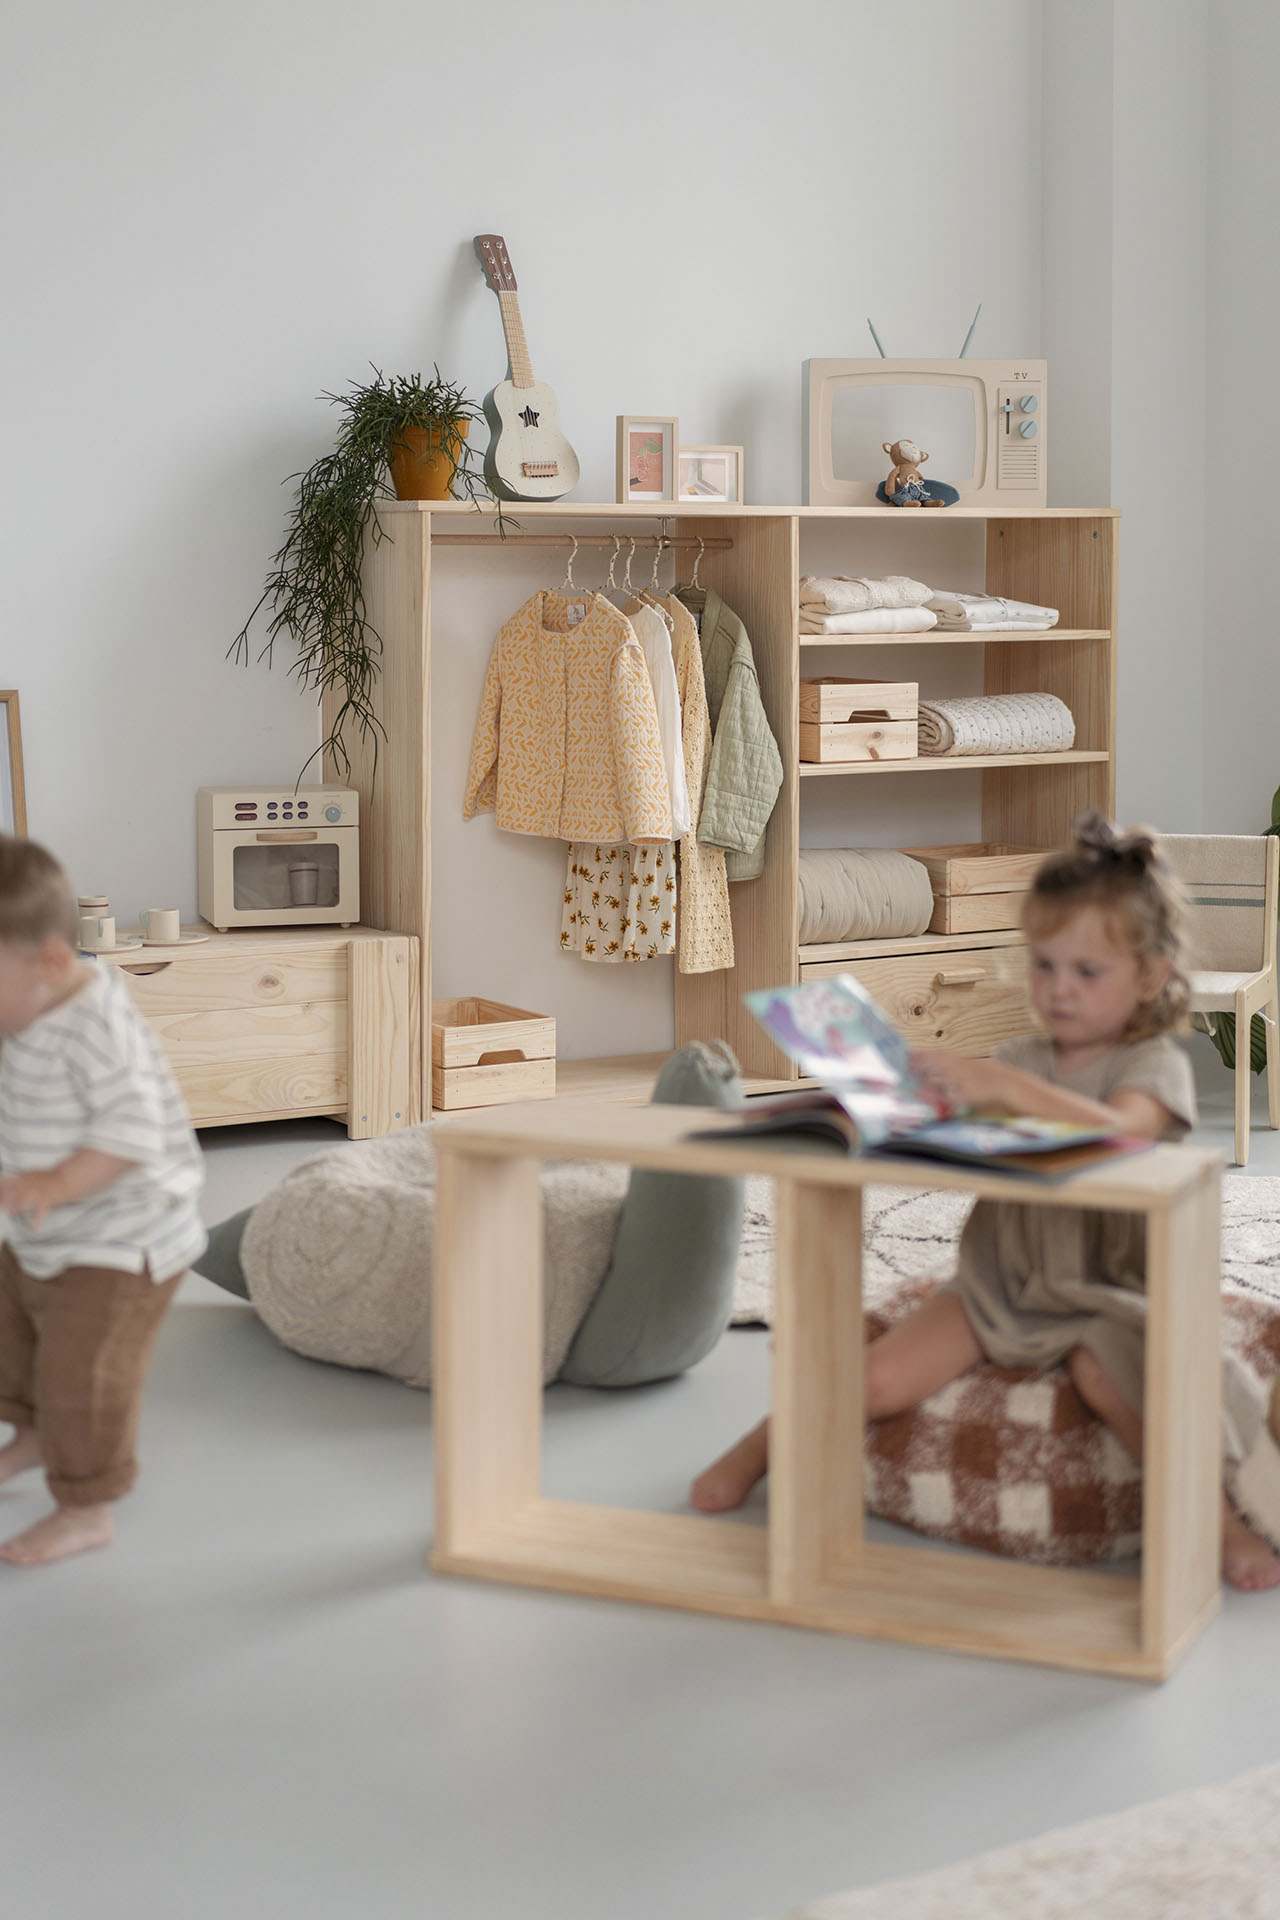 Te contamos los beneficios de los muebles Montessori - Muebles LUFE